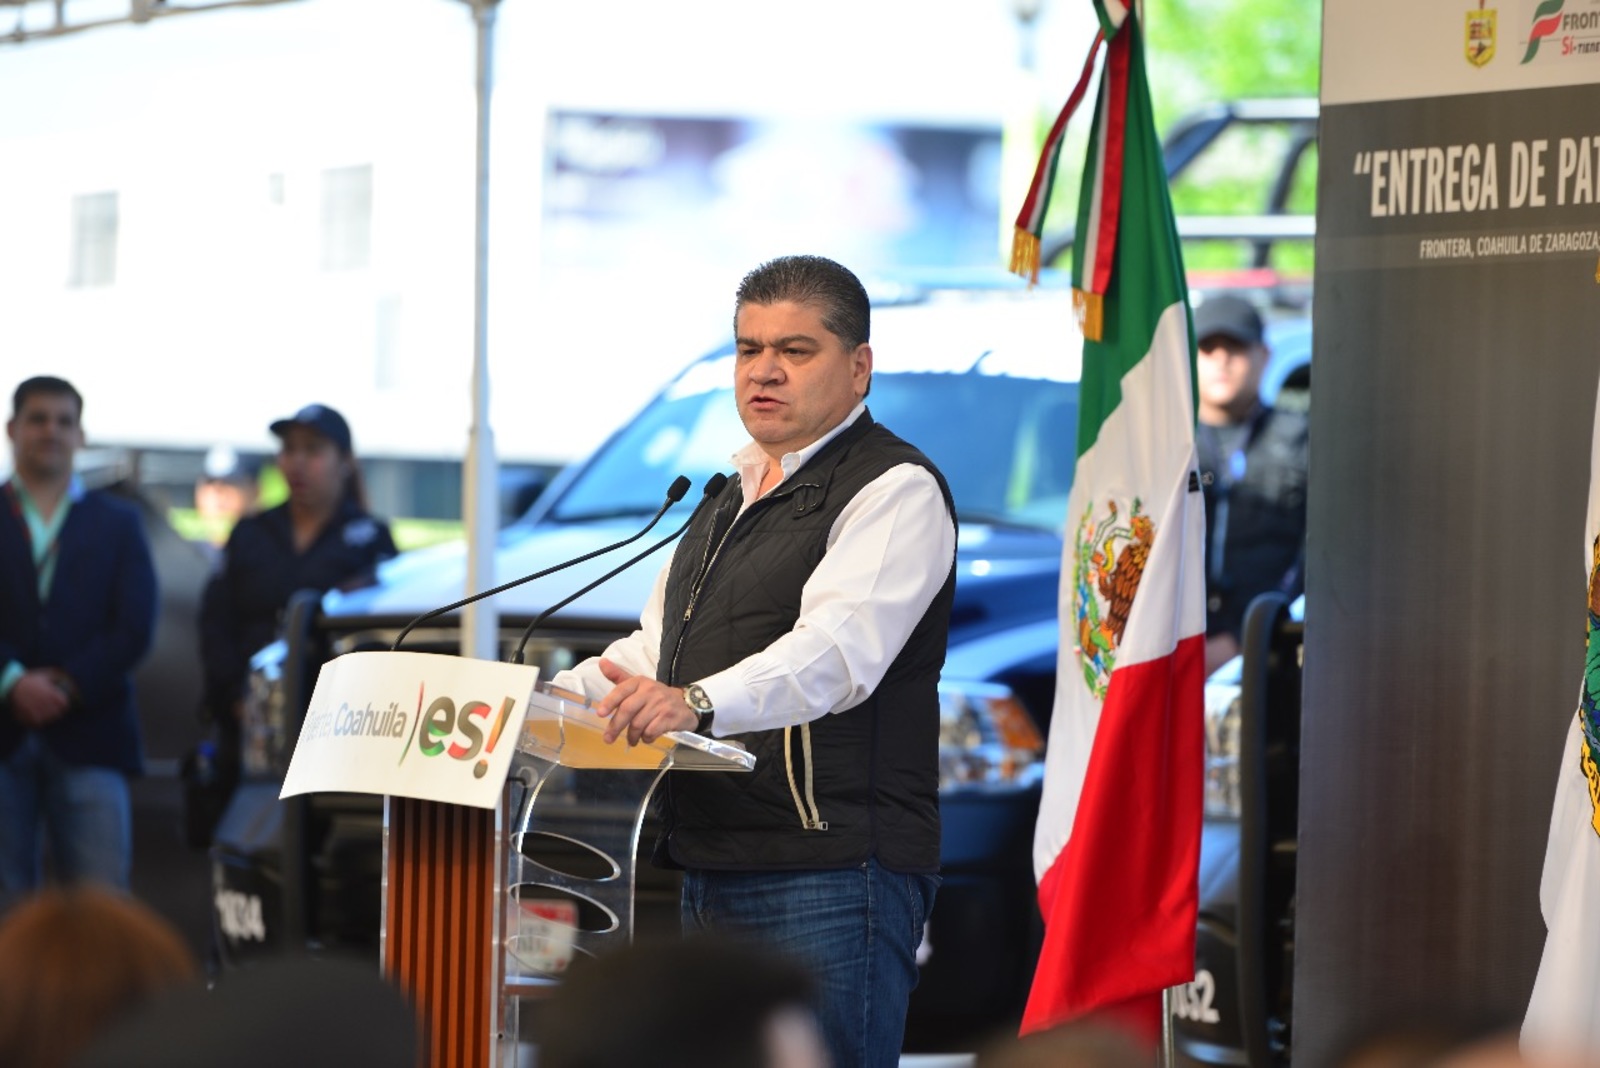 Seguridad. Miguel Ángel Riquelme Solís, gobernador del estado de Coahuila destaca inversión en fuerza policial.